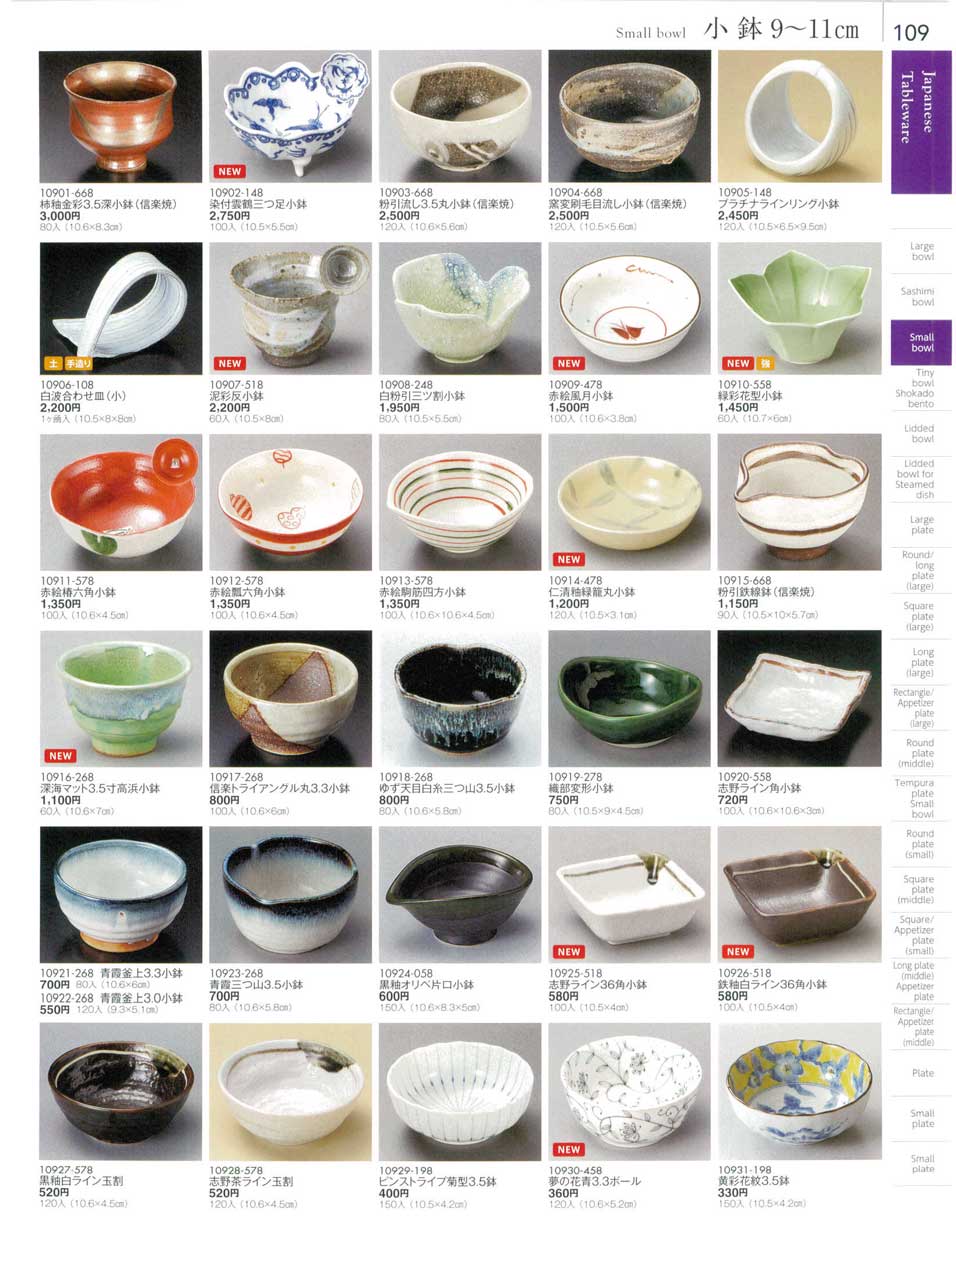 食器 小鉢９から１１ｃｍSmall bowl 陶雅１８－109ページ